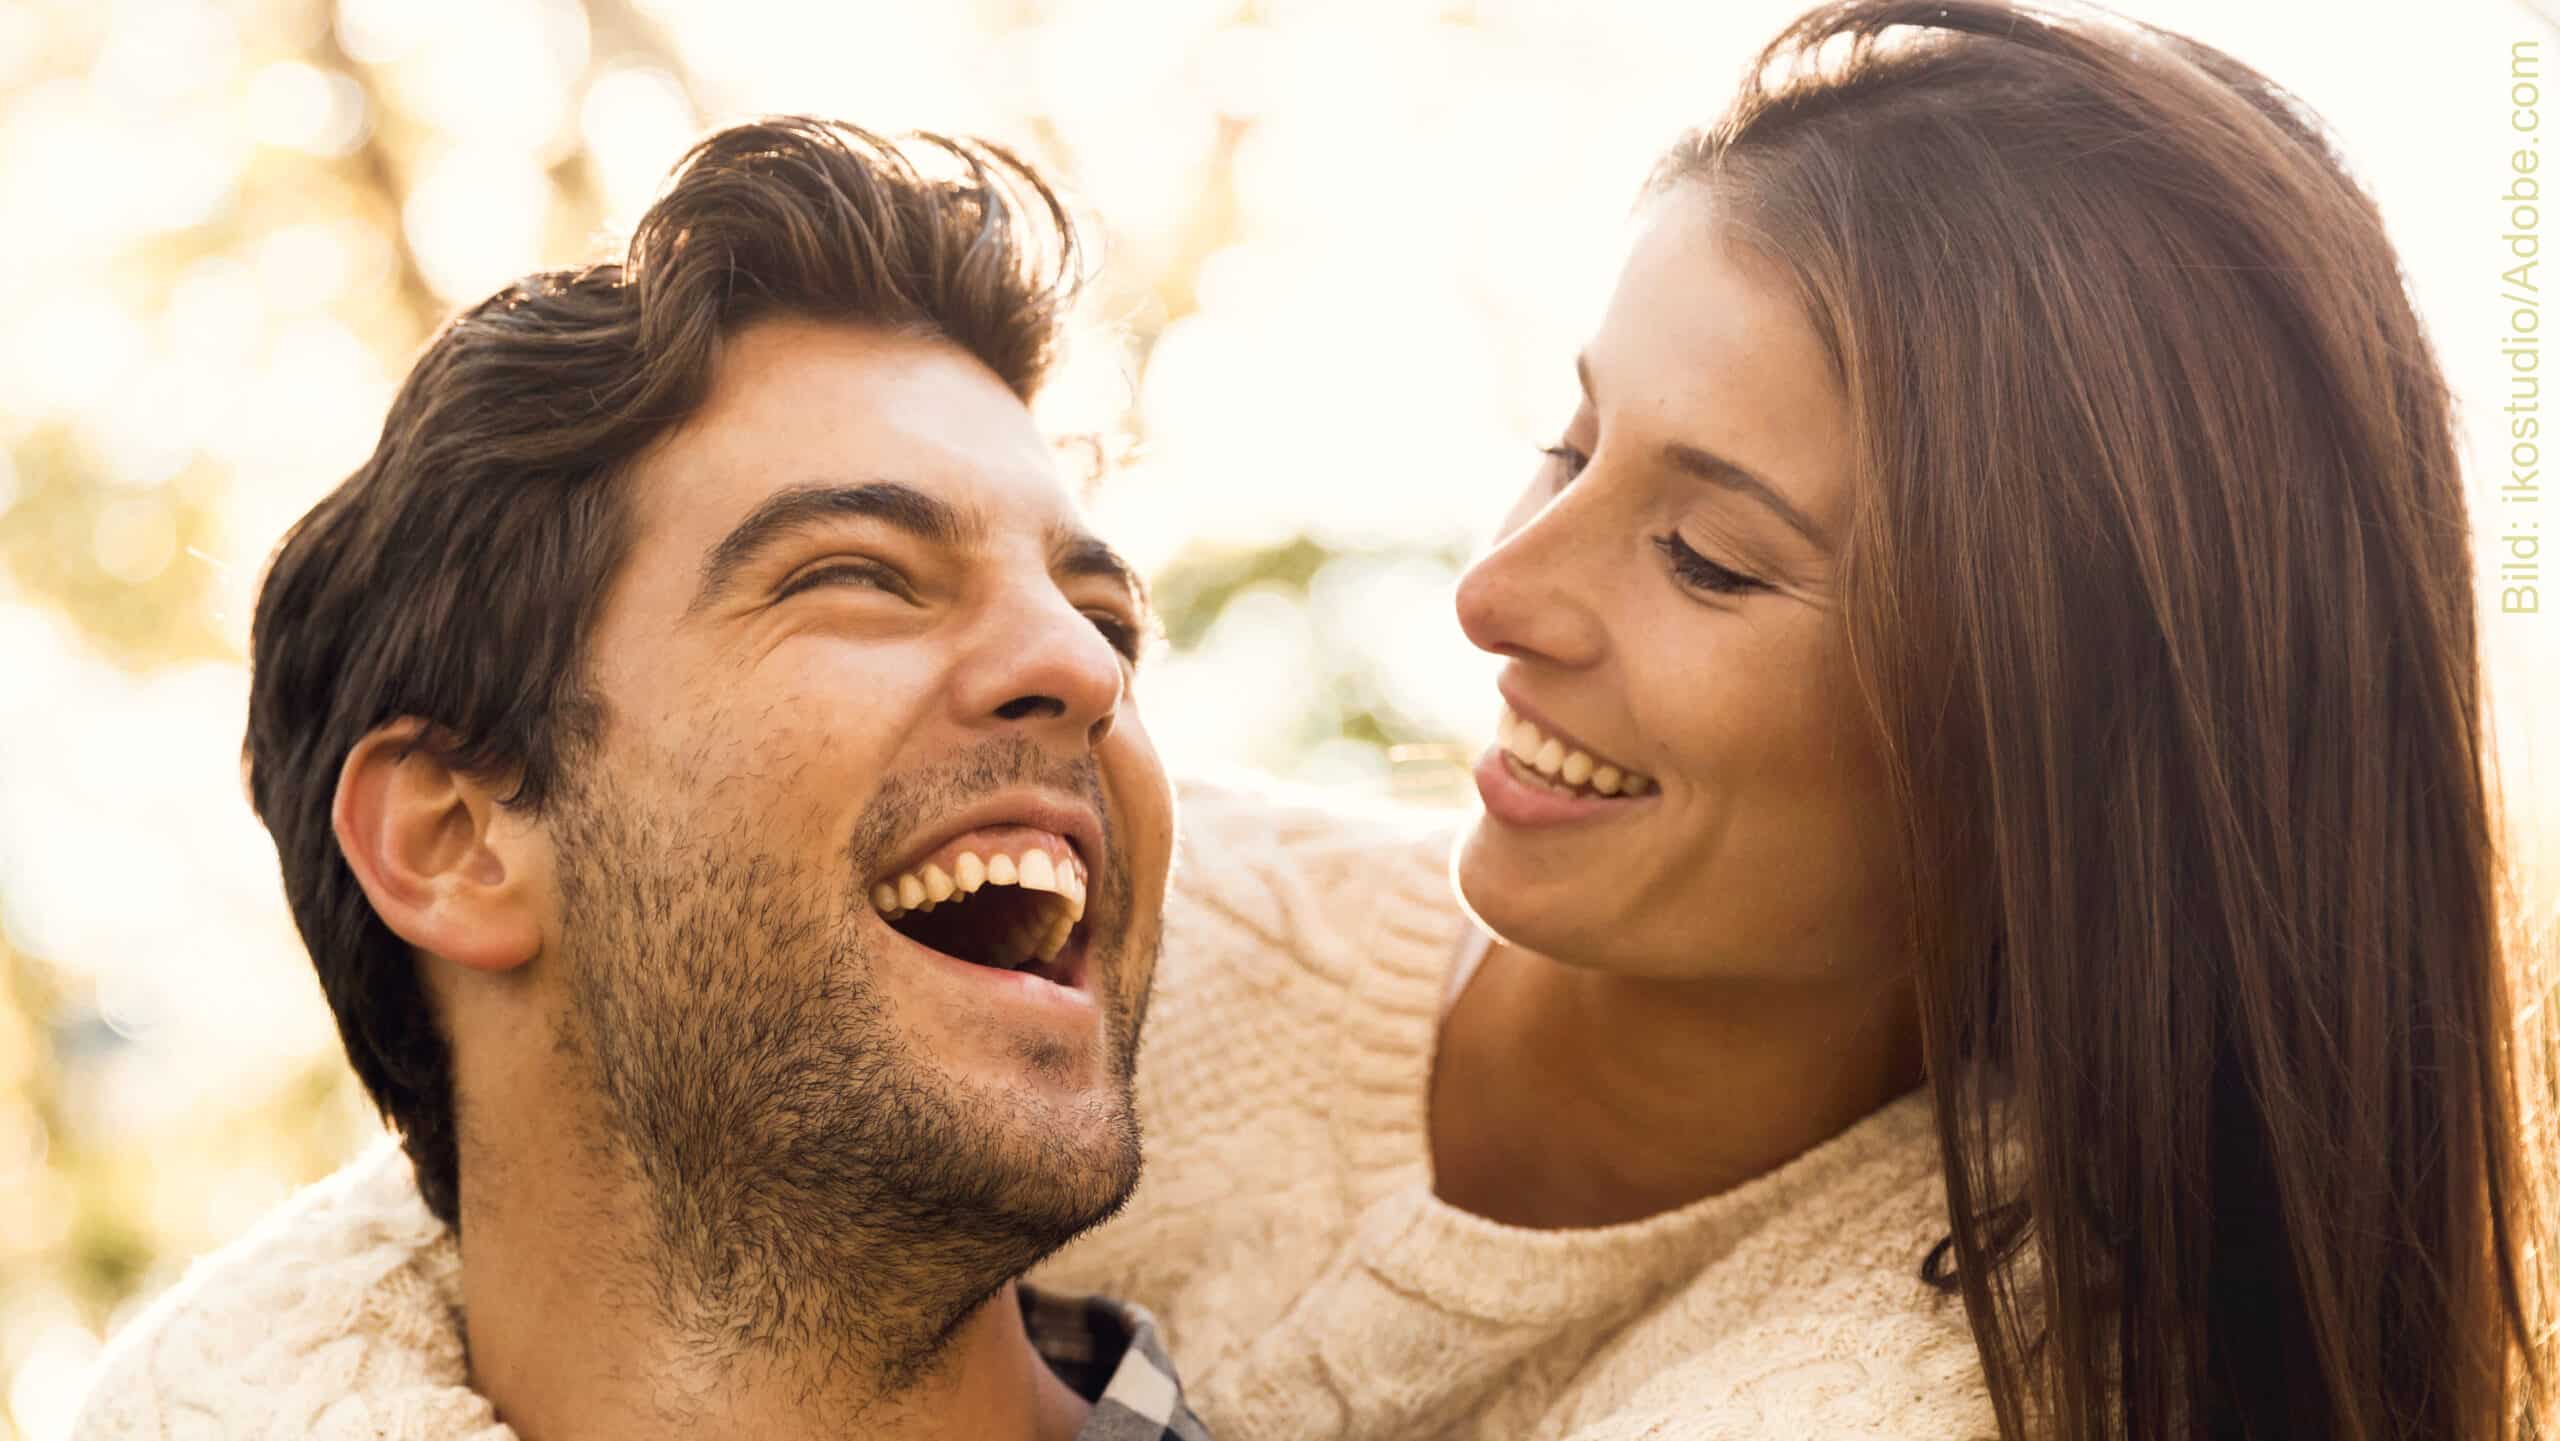 Das Bild zum Artikel: Monogamie in der modernen Welt: Was bedeutet Treue heute noch? zeigt ein lachendes, glückliches Paar